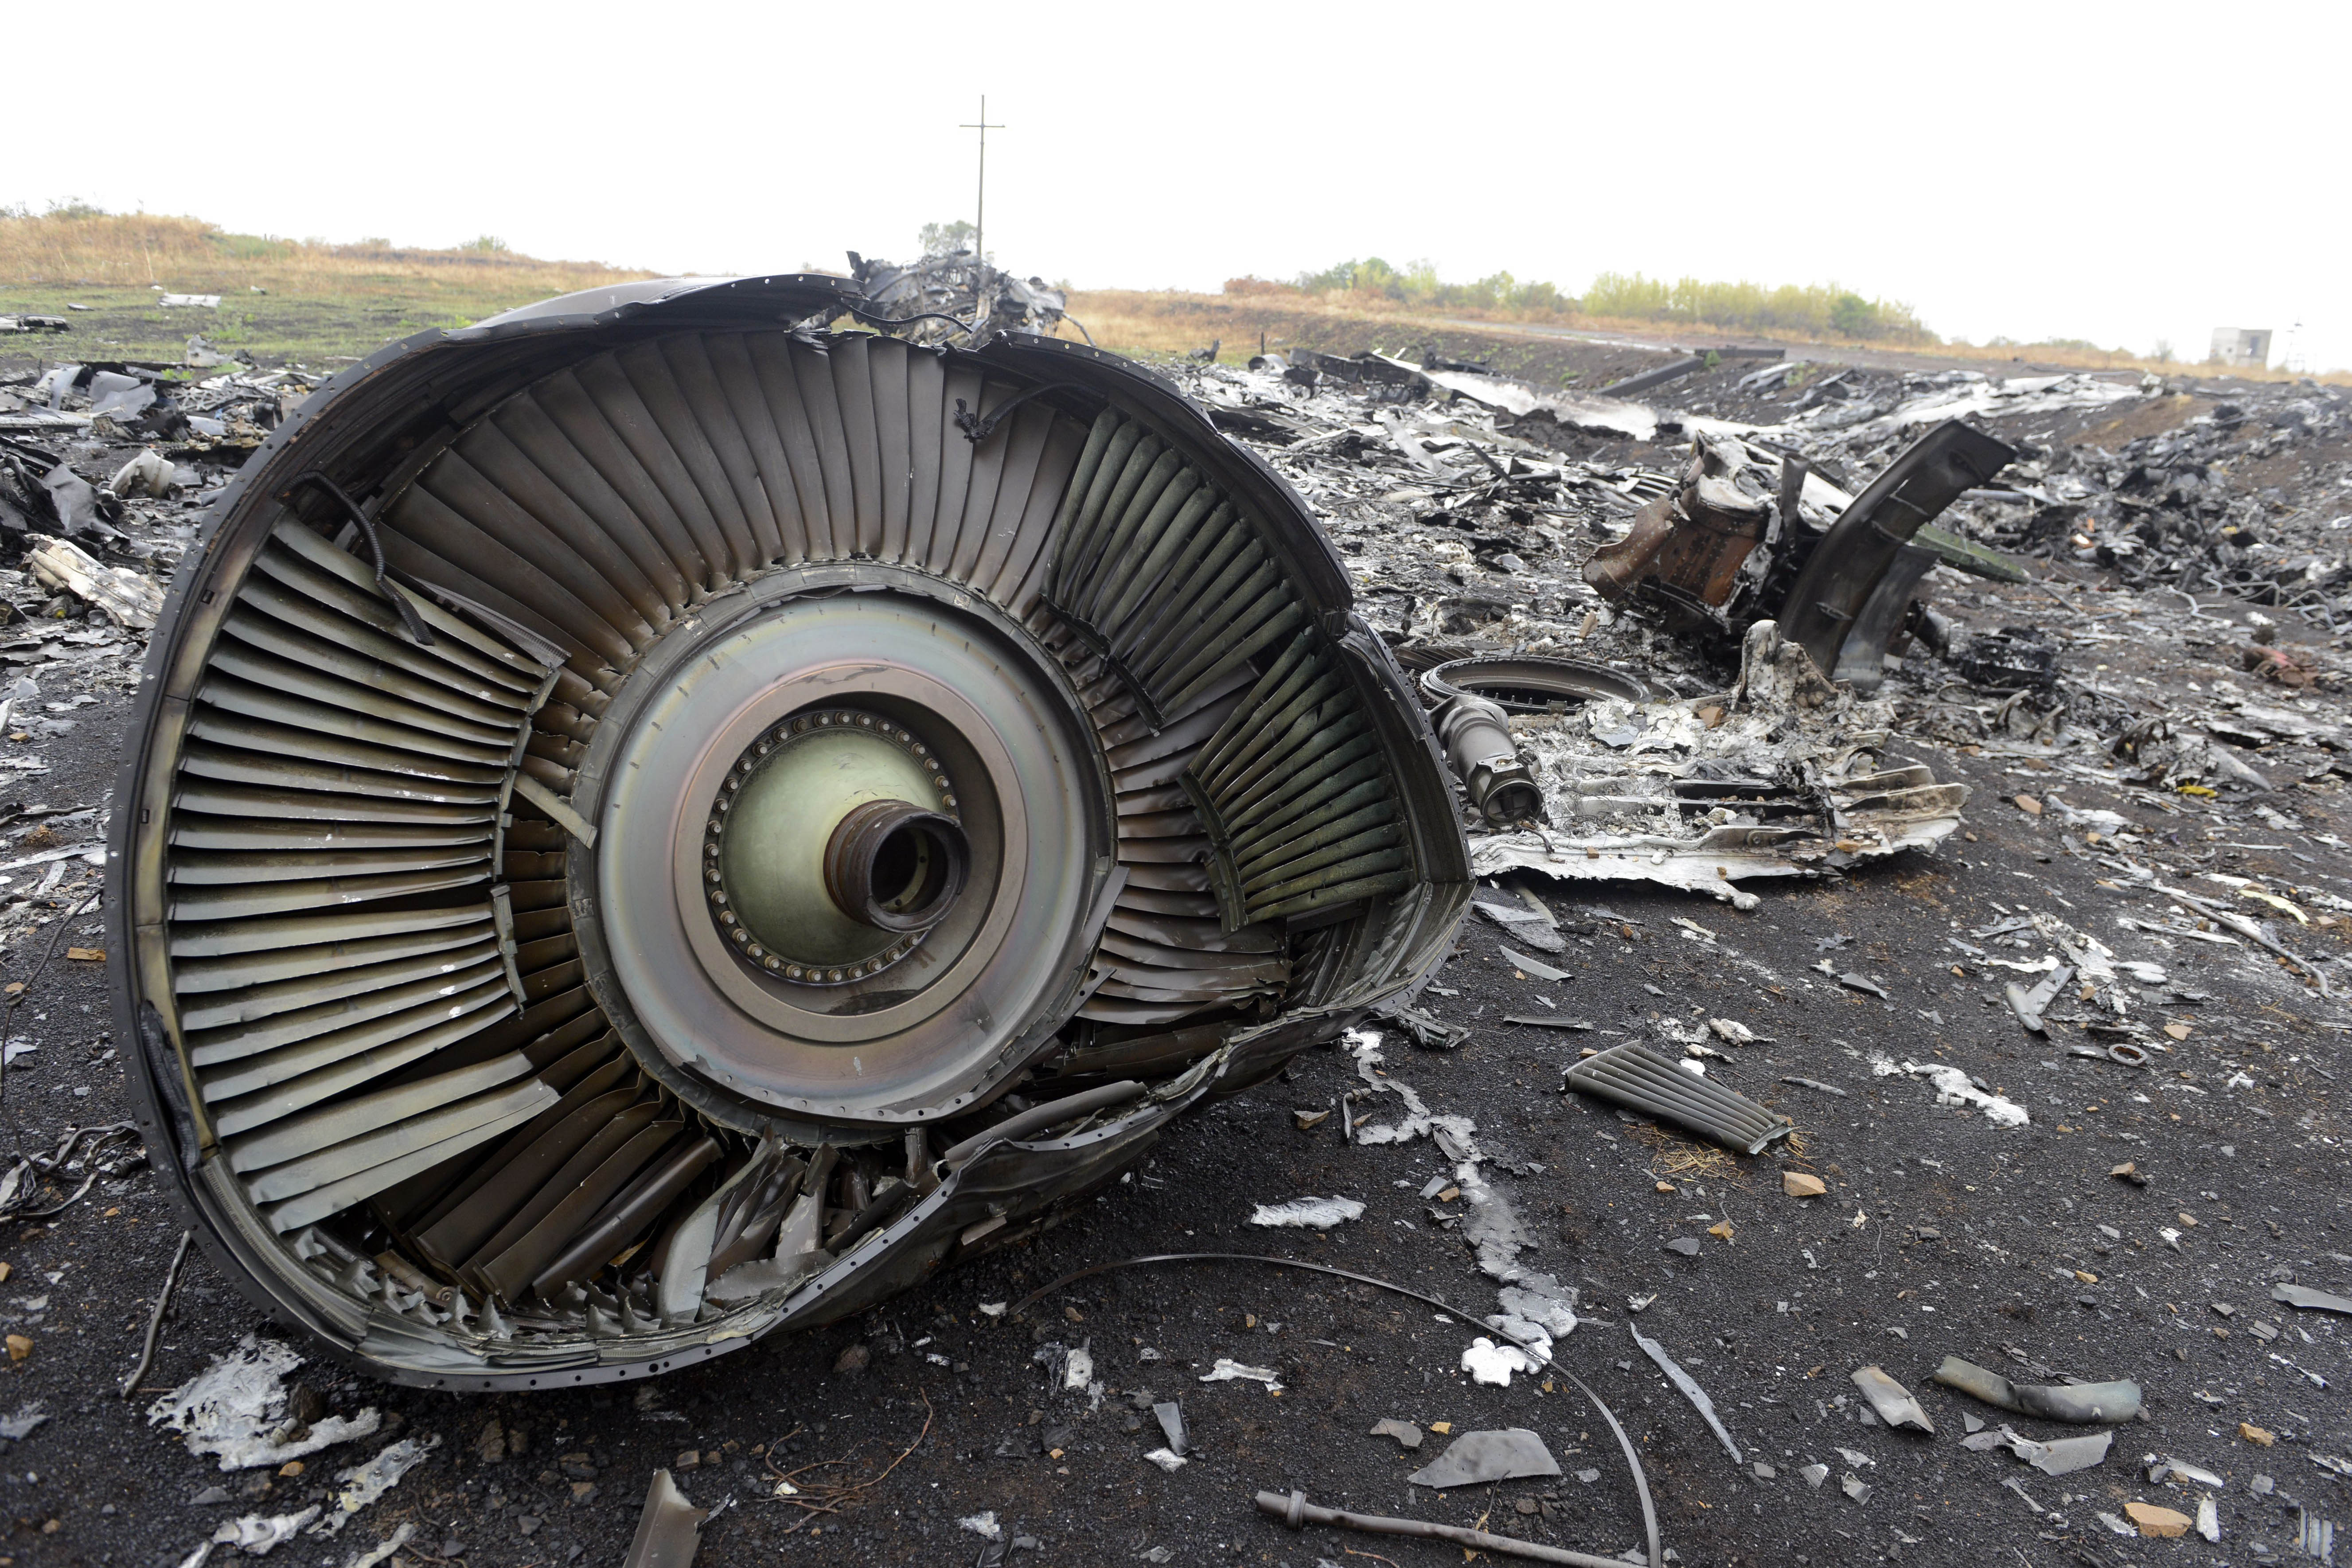 Russischer UN-Botschafter über MH17 Abschuss: „Echte Untersuchung hat nicht stattgefunden“